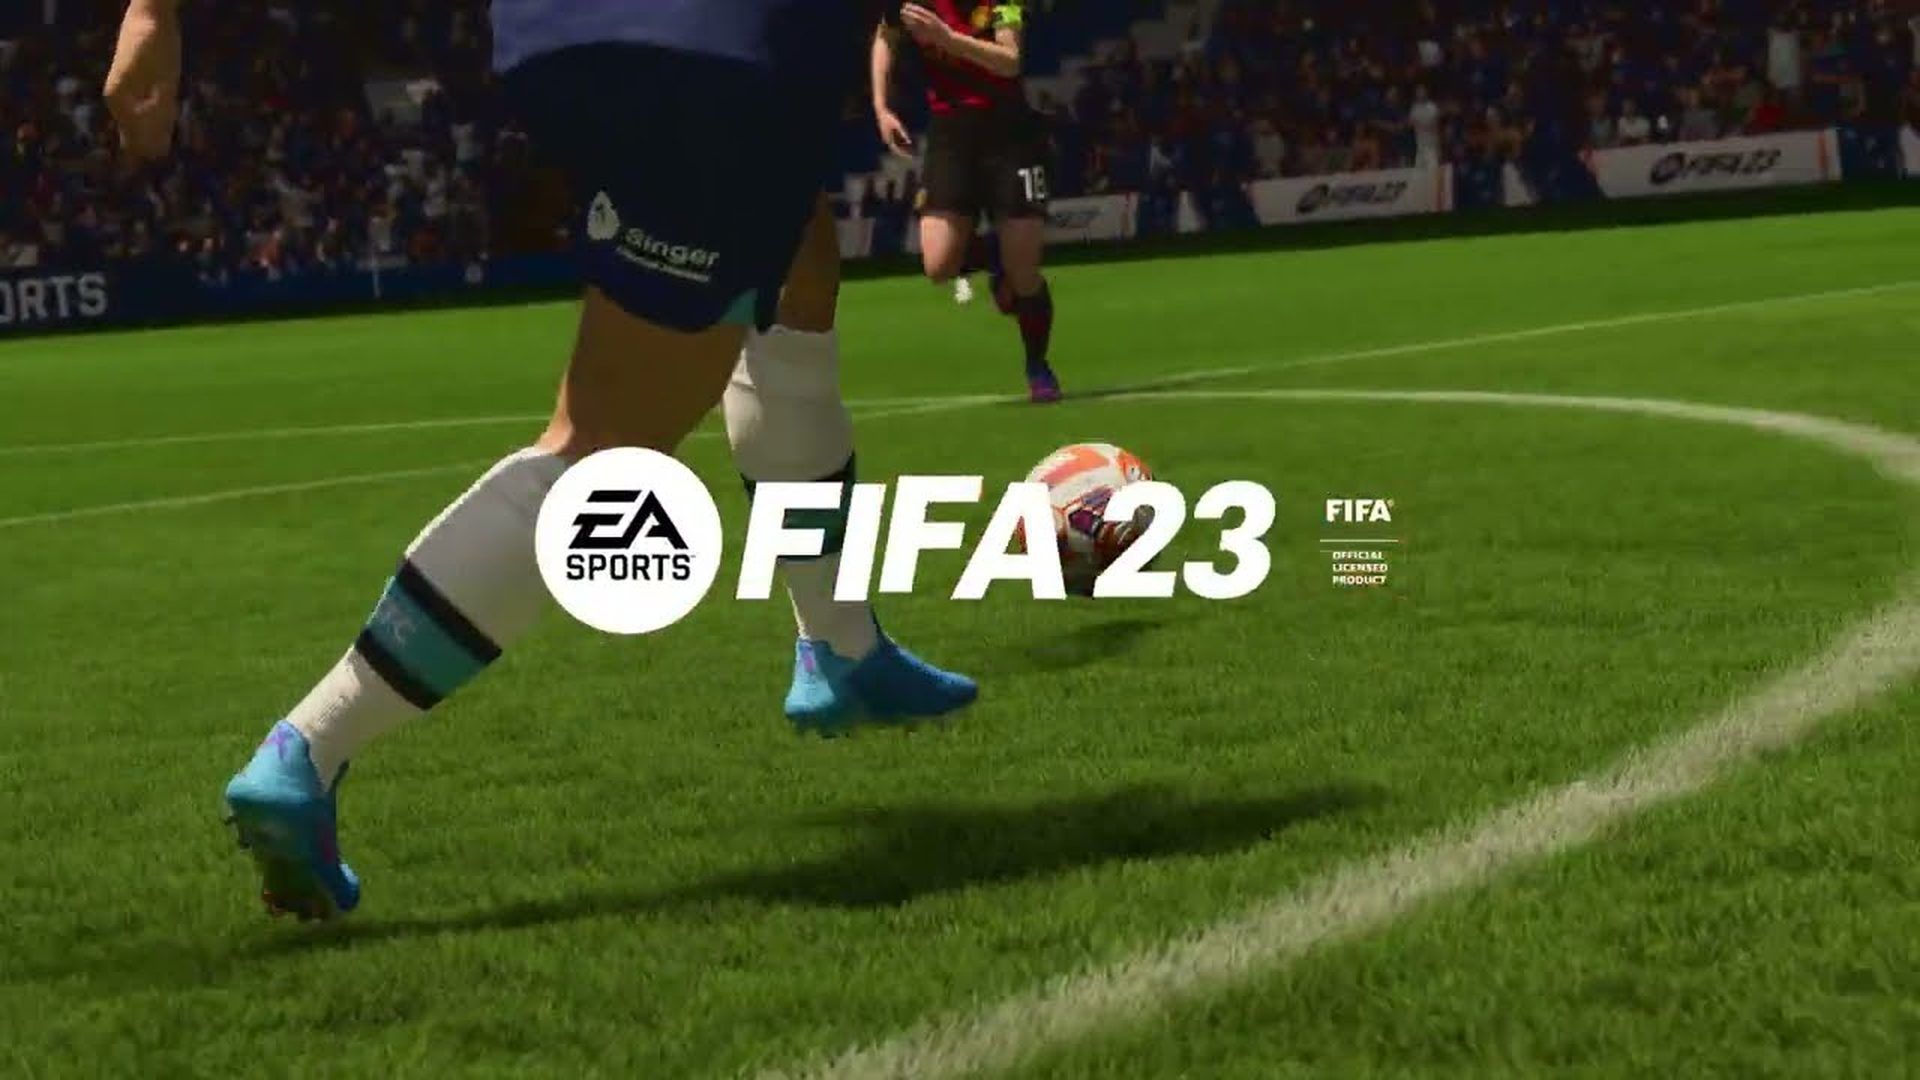 Uitgelegd: FIFA 23-compensatiepakketten